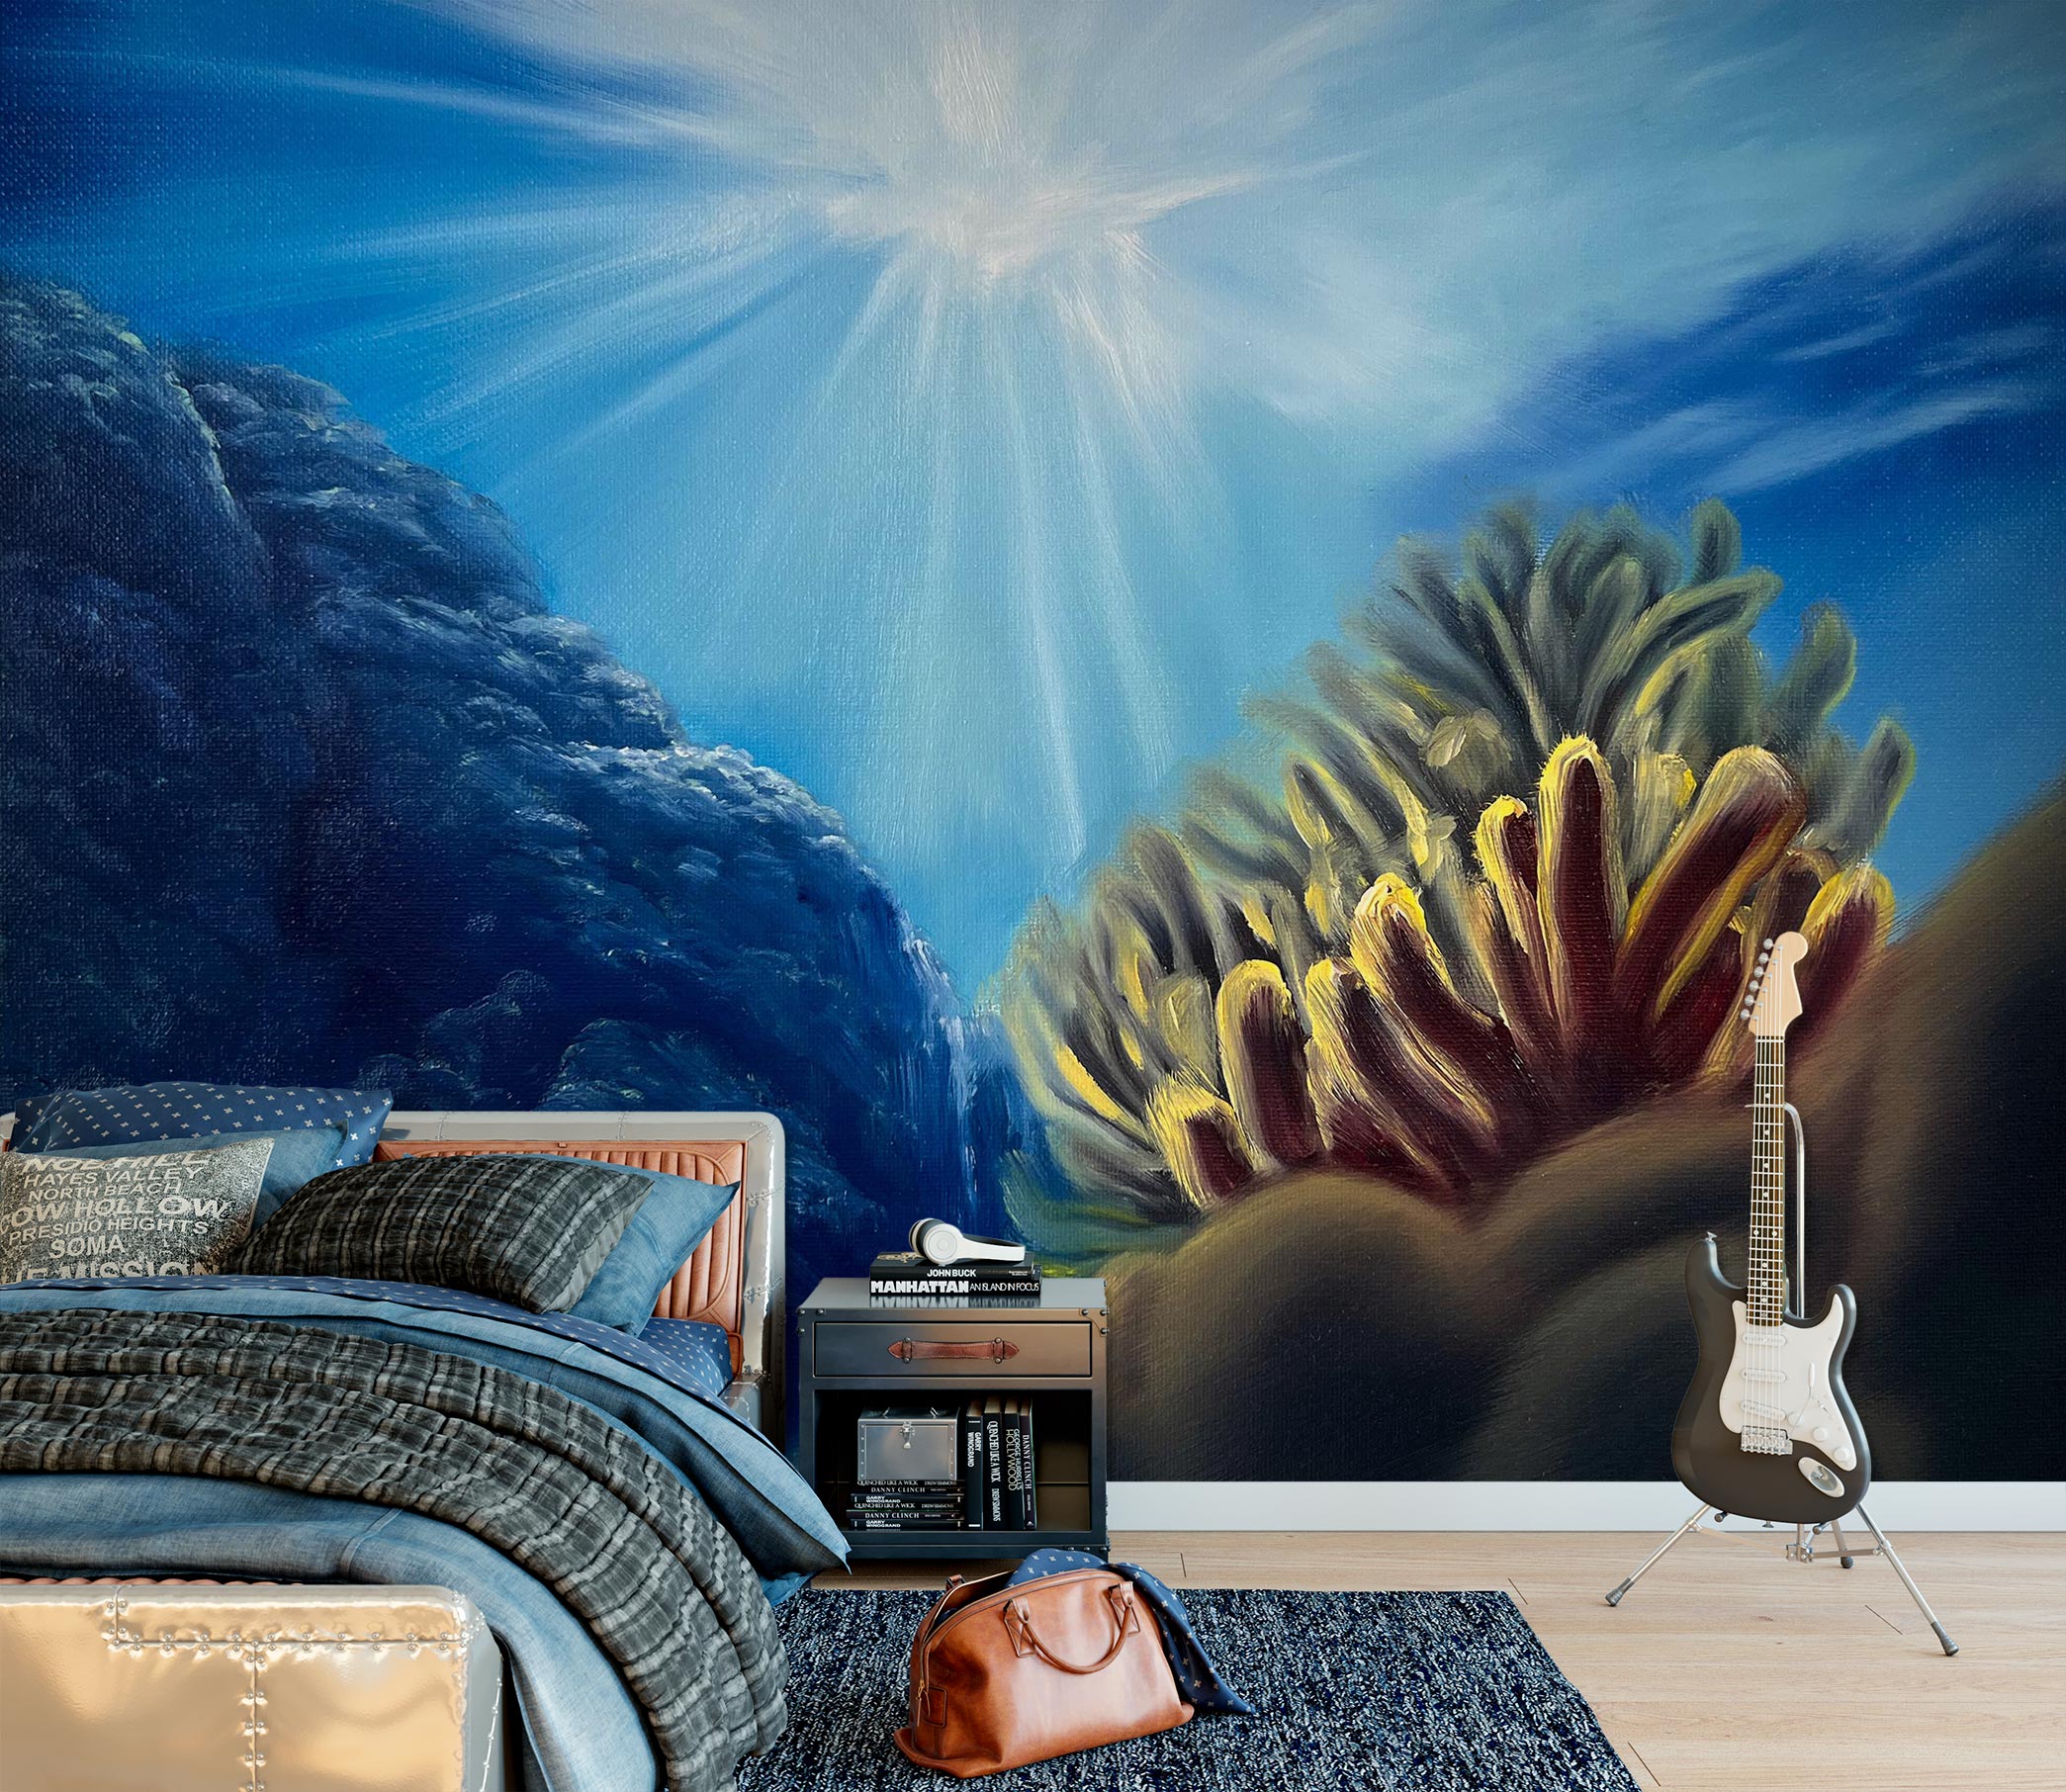 3D Seabed Coral 9822 Marina Zotova Wall Mural Wall Murals